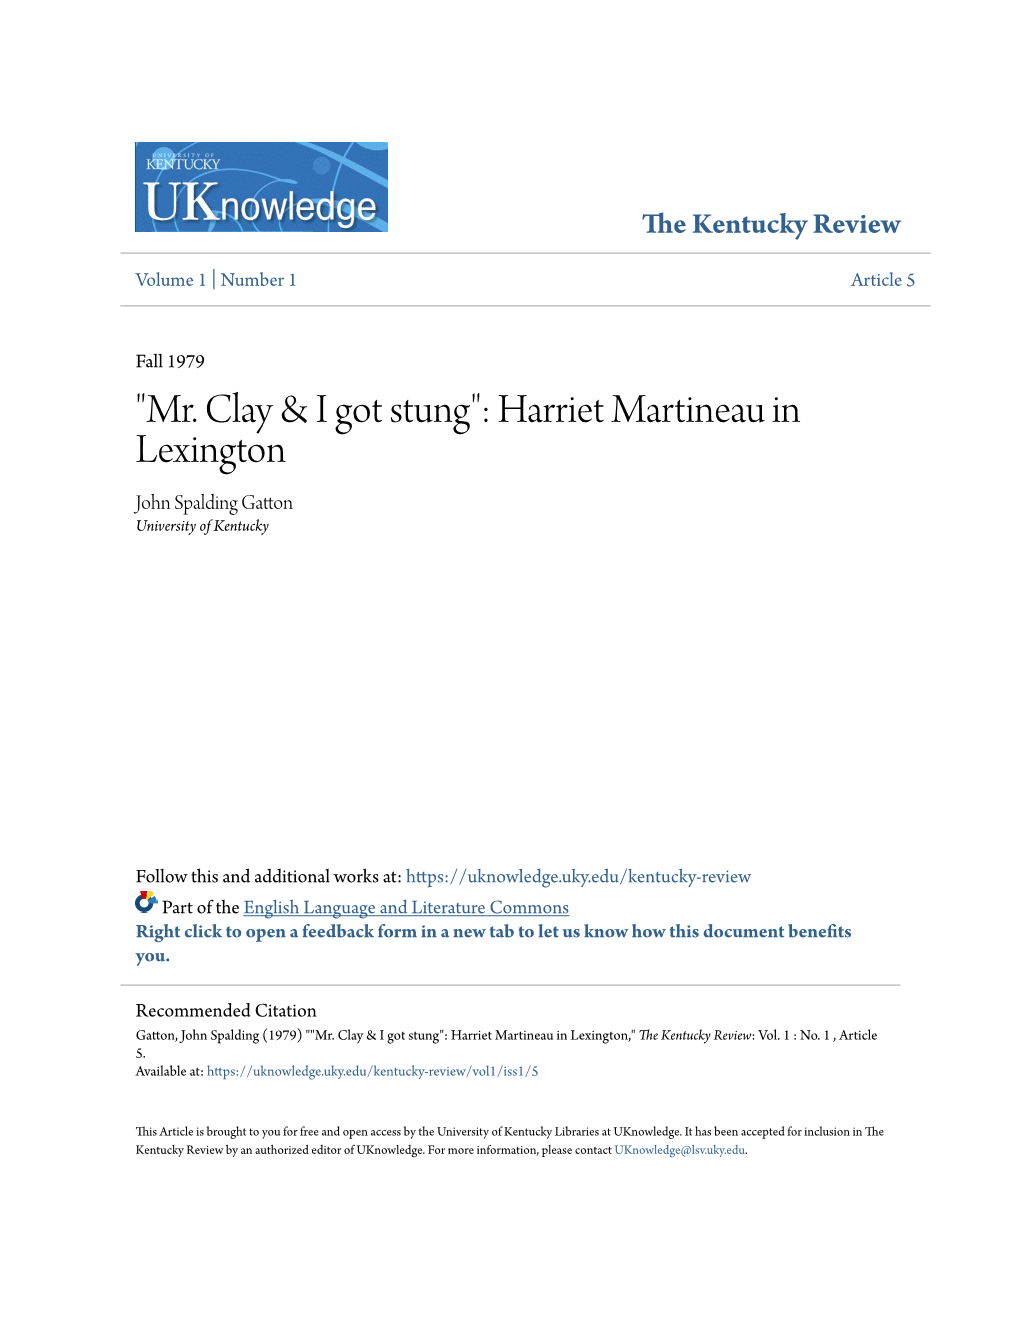 "Mr. Clay & I Got Stung": Harriet Martineau in Lexington